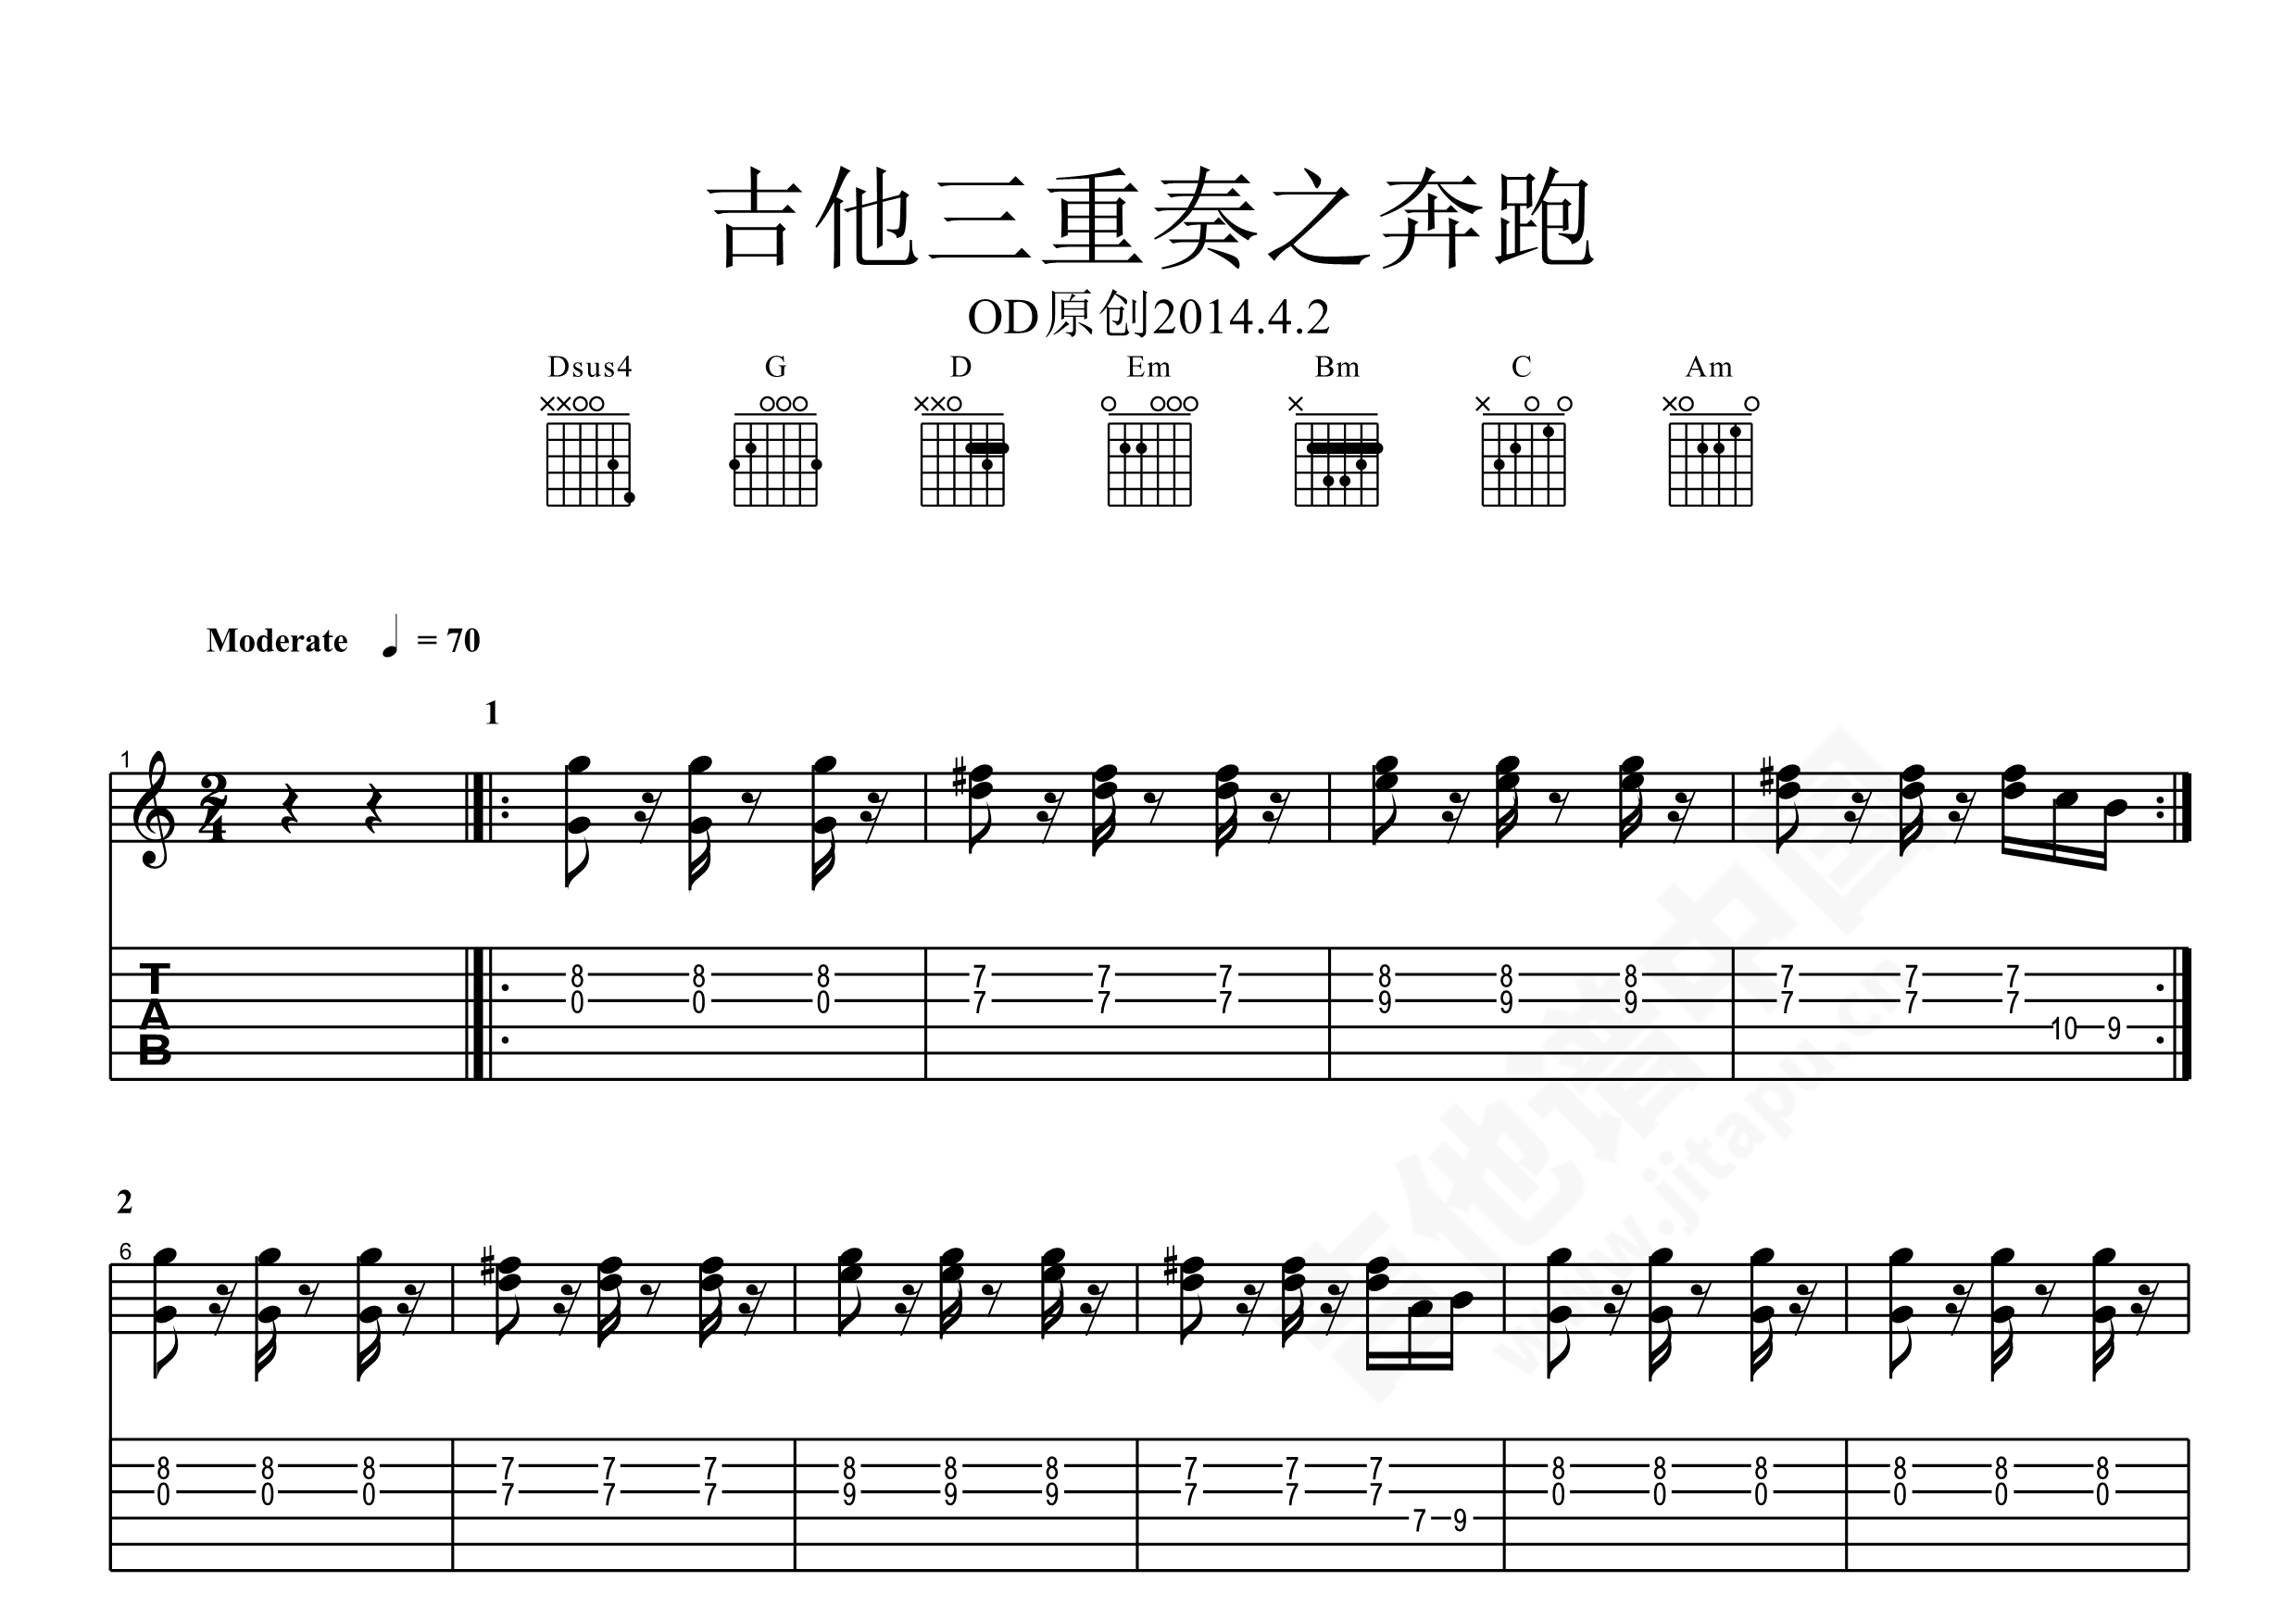 黄征成名曲吉他谱《奔跑》-吉他曲谱 - 乐器学习网